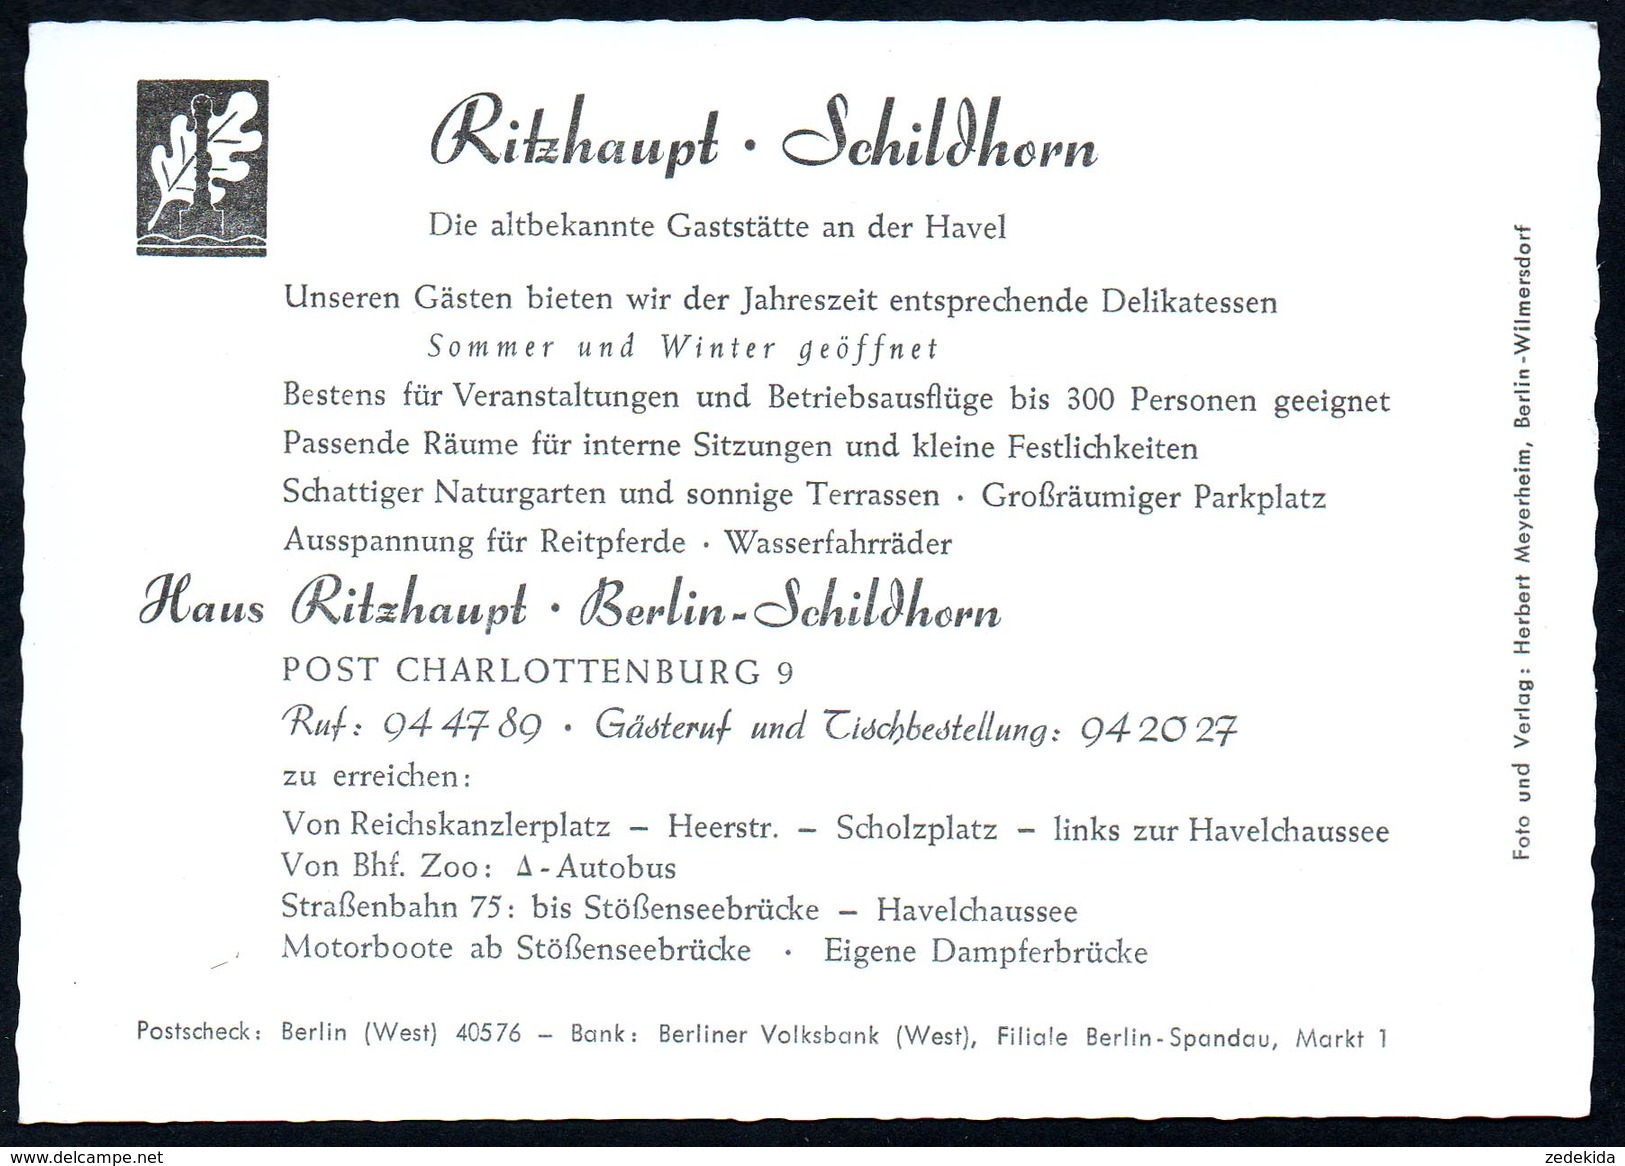 A4500 - Alte MBK Ansichtskarte - Werbekarte - Gaststätte Ritzhaupt - Berlin Schildhorn TOP - Grunewald